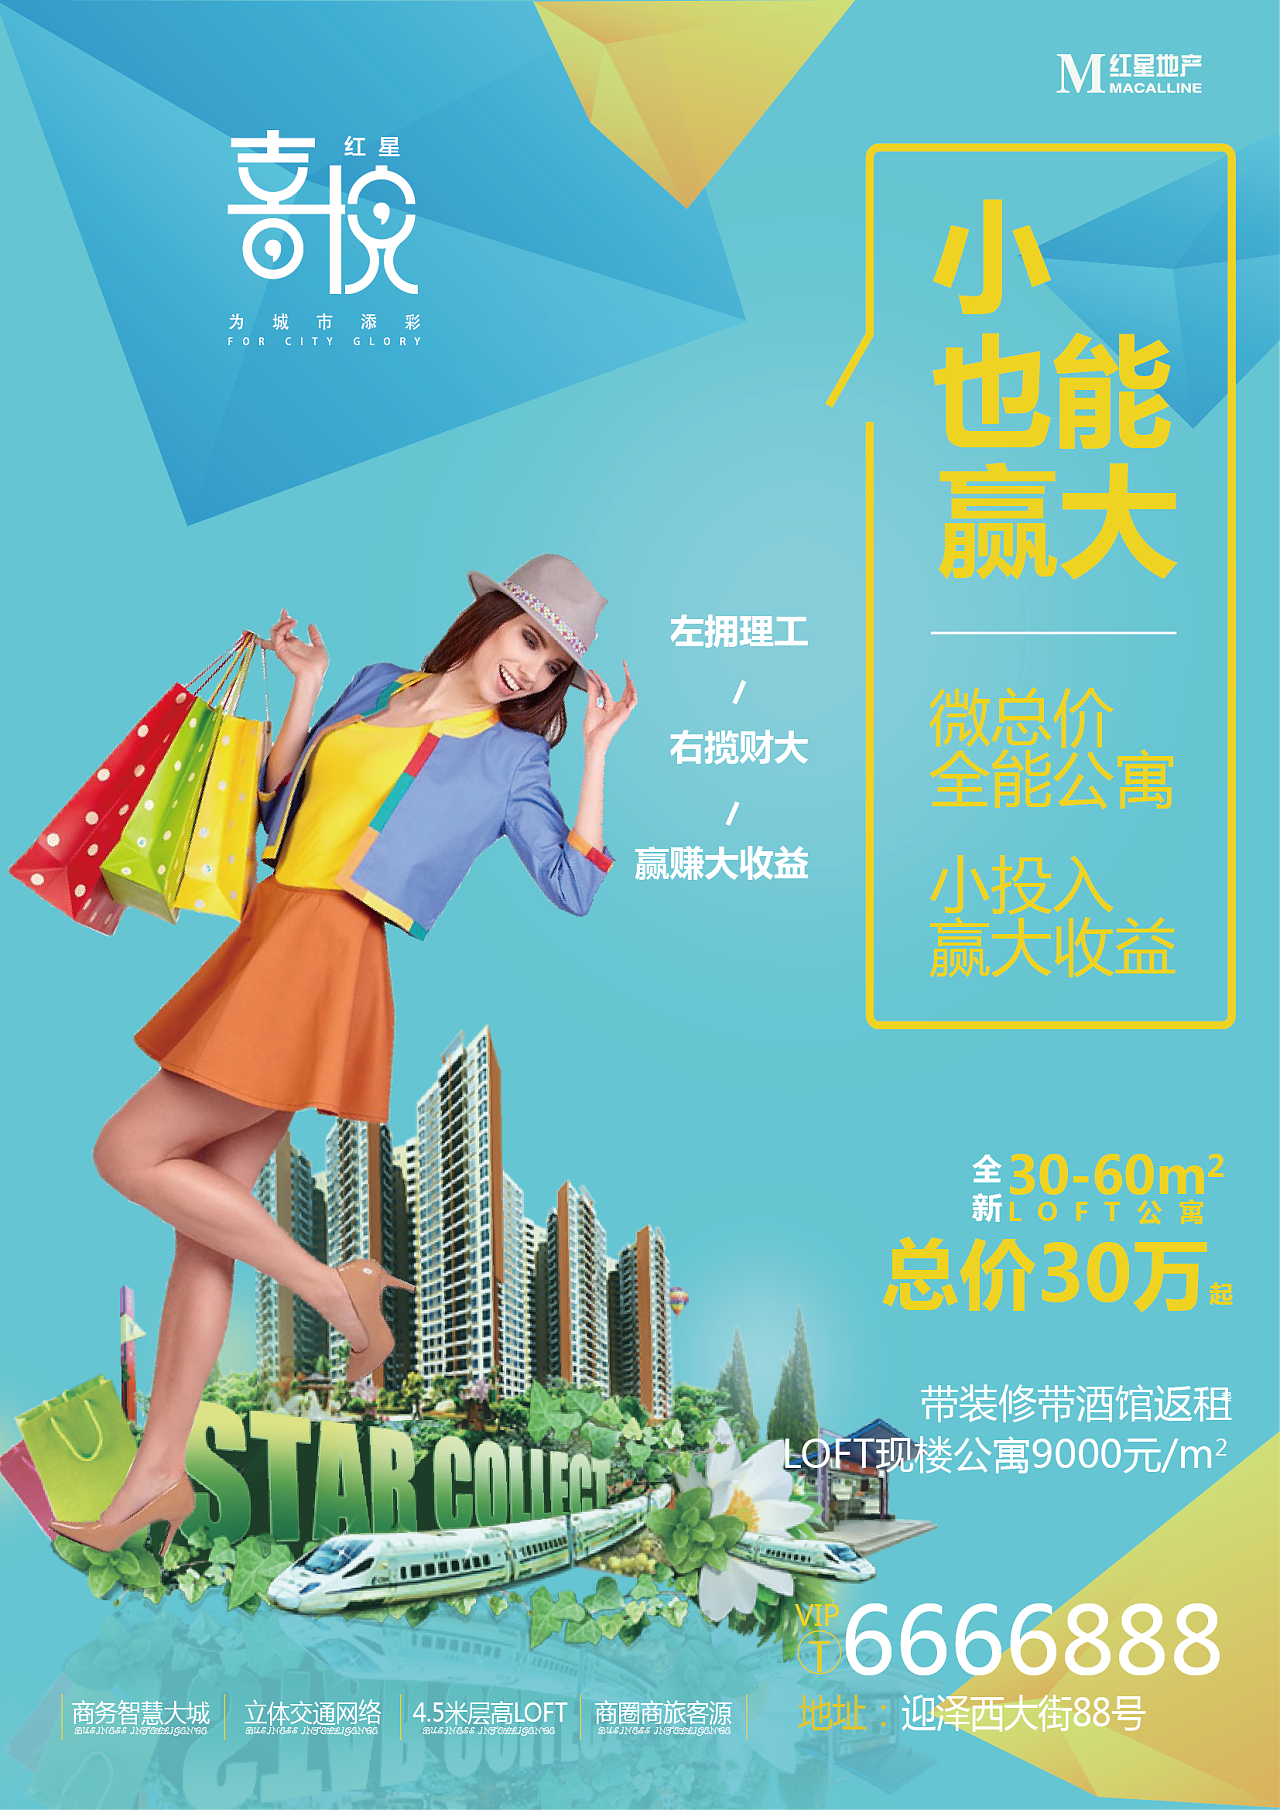 中国房地产素材 年轻活力 loft公寓 地产海报 |平